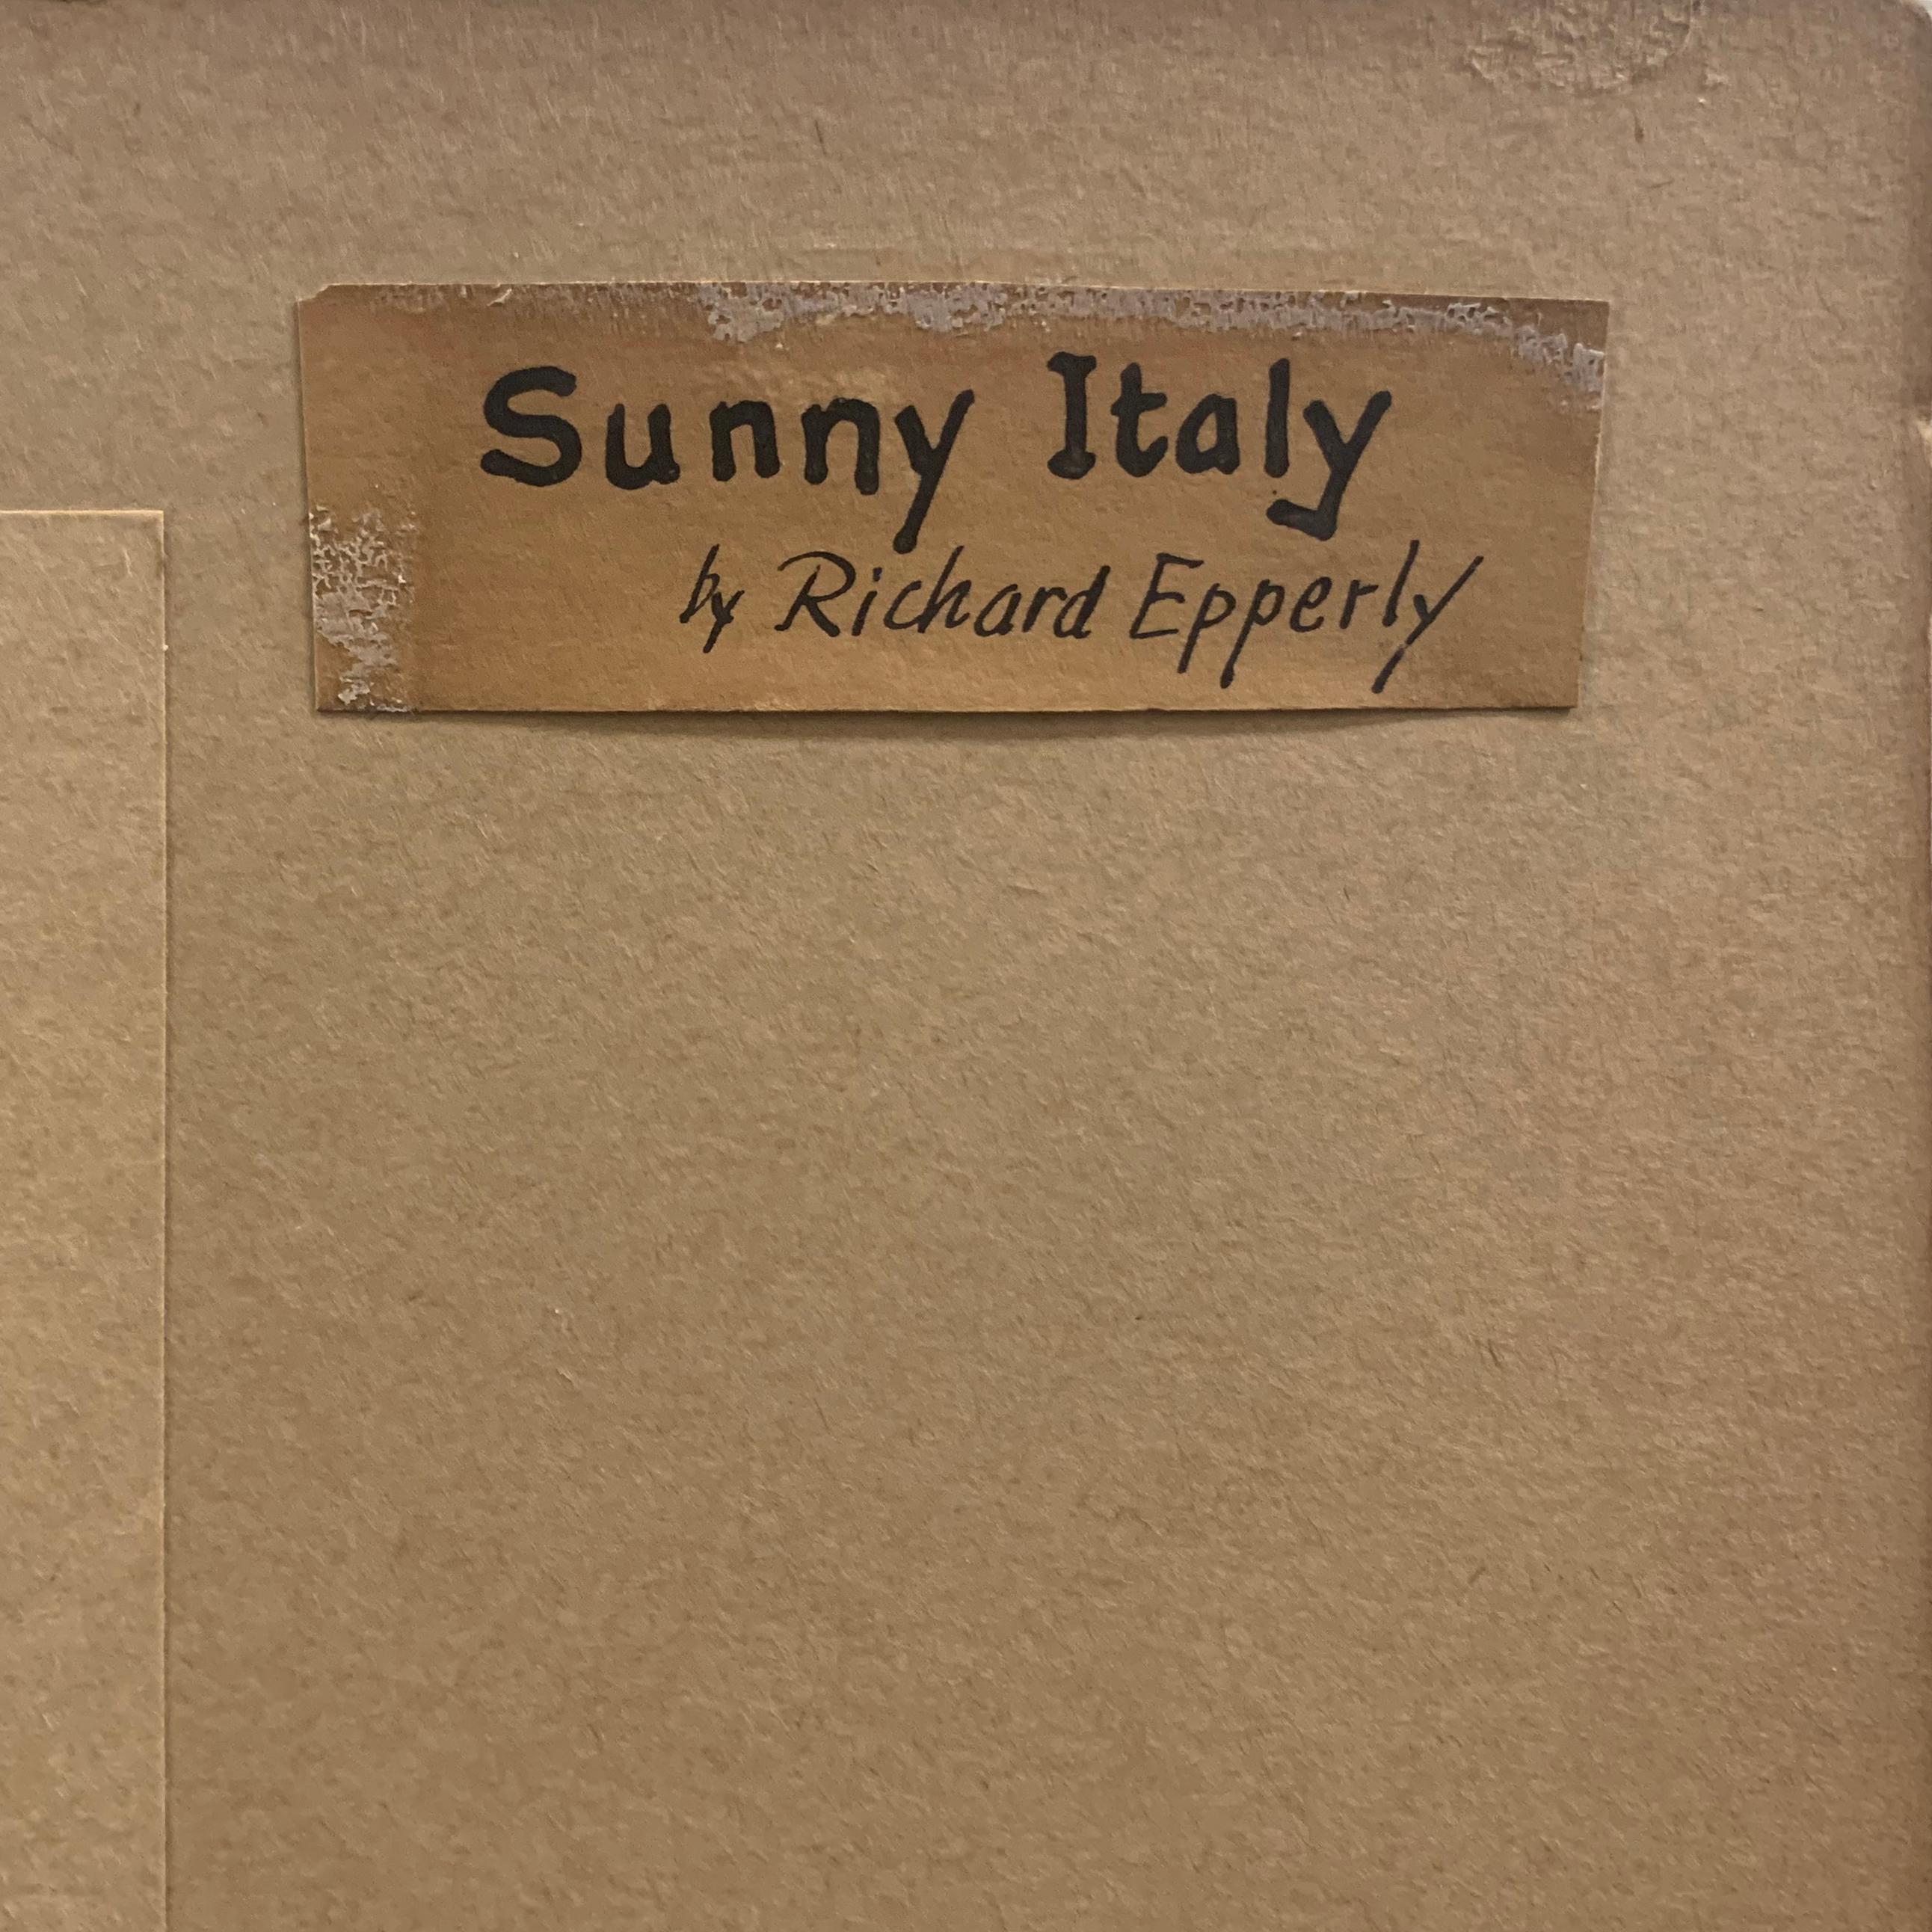 „Sicily“, Paris, Art Institute of Chicago, Smithsonian Institute, Sunny Italy 5